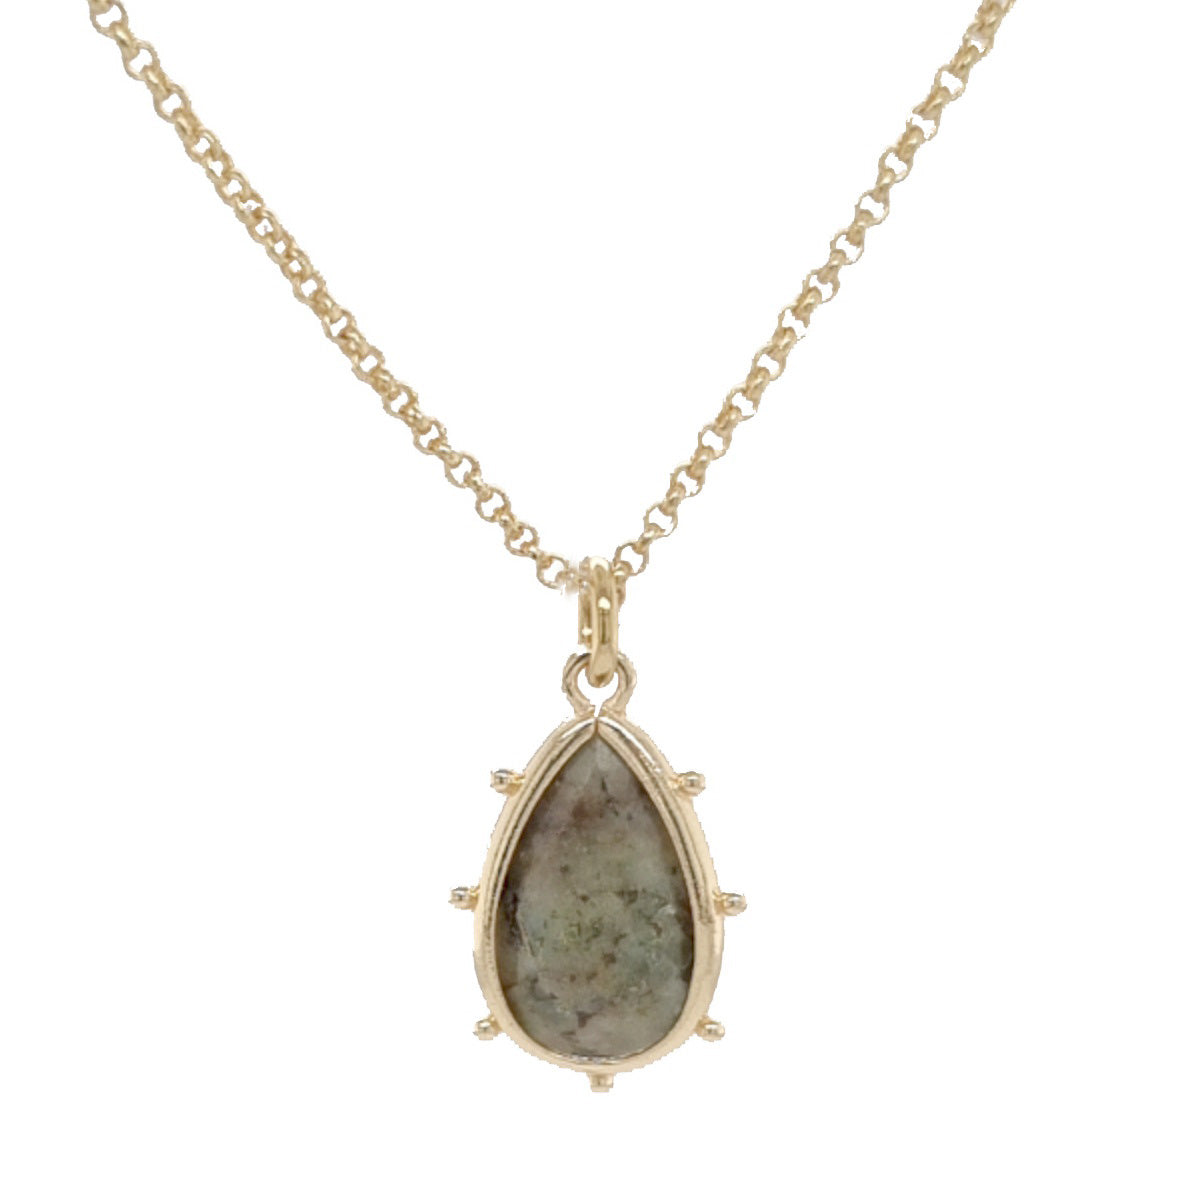 Aurulia Gemstone drop Necklace Green Onyx